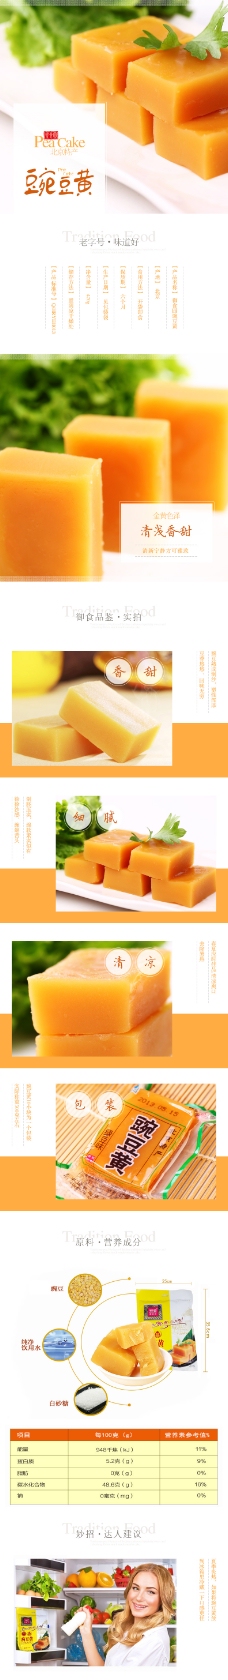 淘宝豌豆黄详情页设计